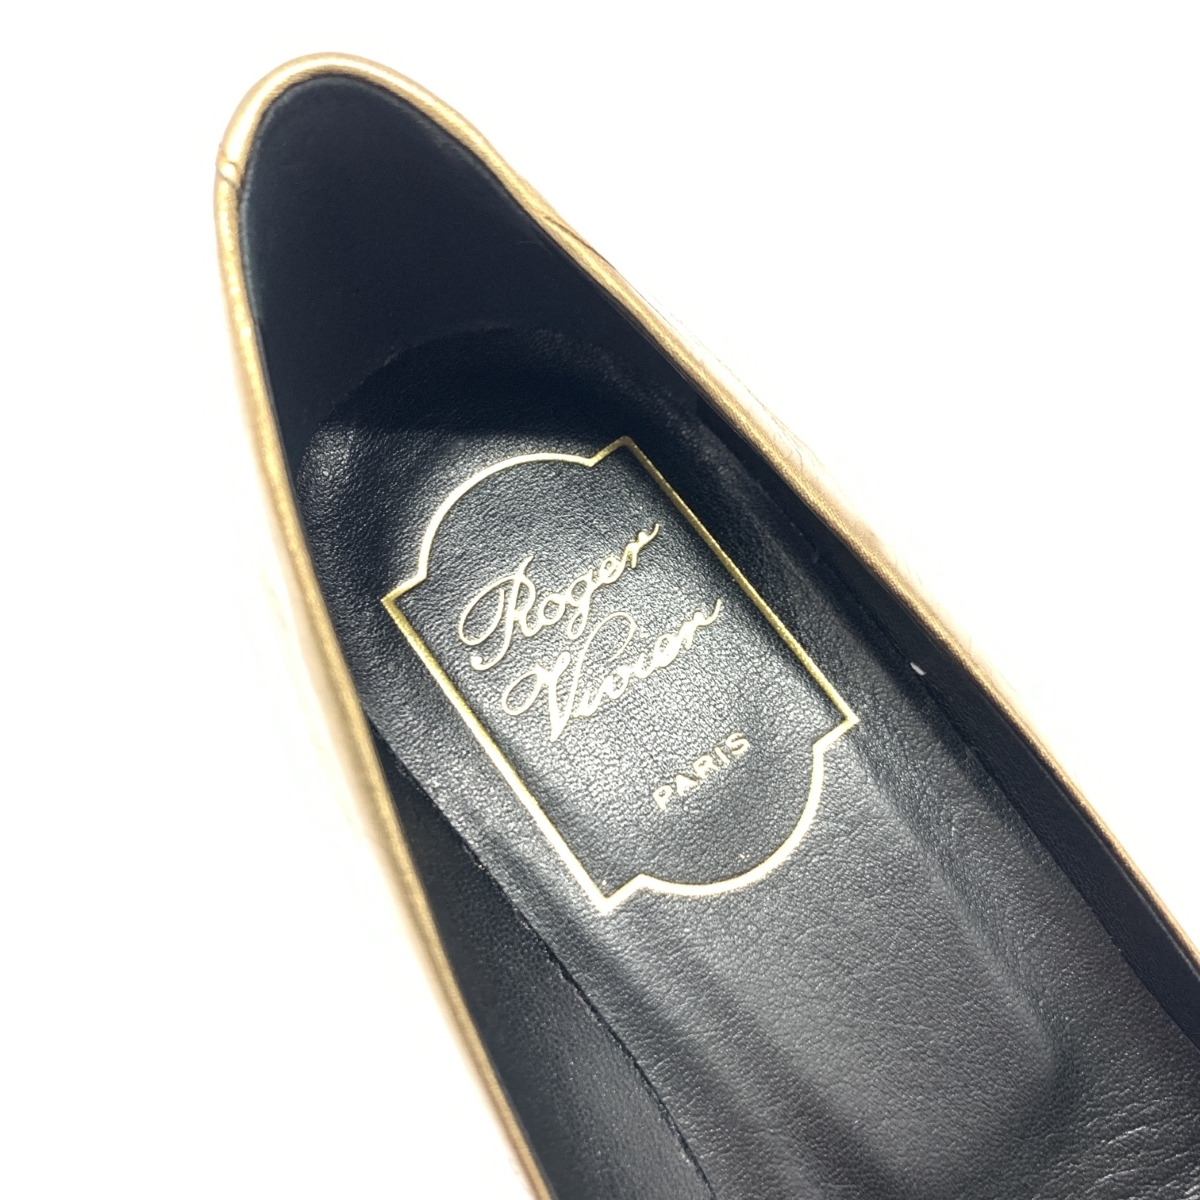  beautiful goods *Roger Vivierroje vi vi e pumps 35* Gold color leather square plate lady's shoes shoes shoes